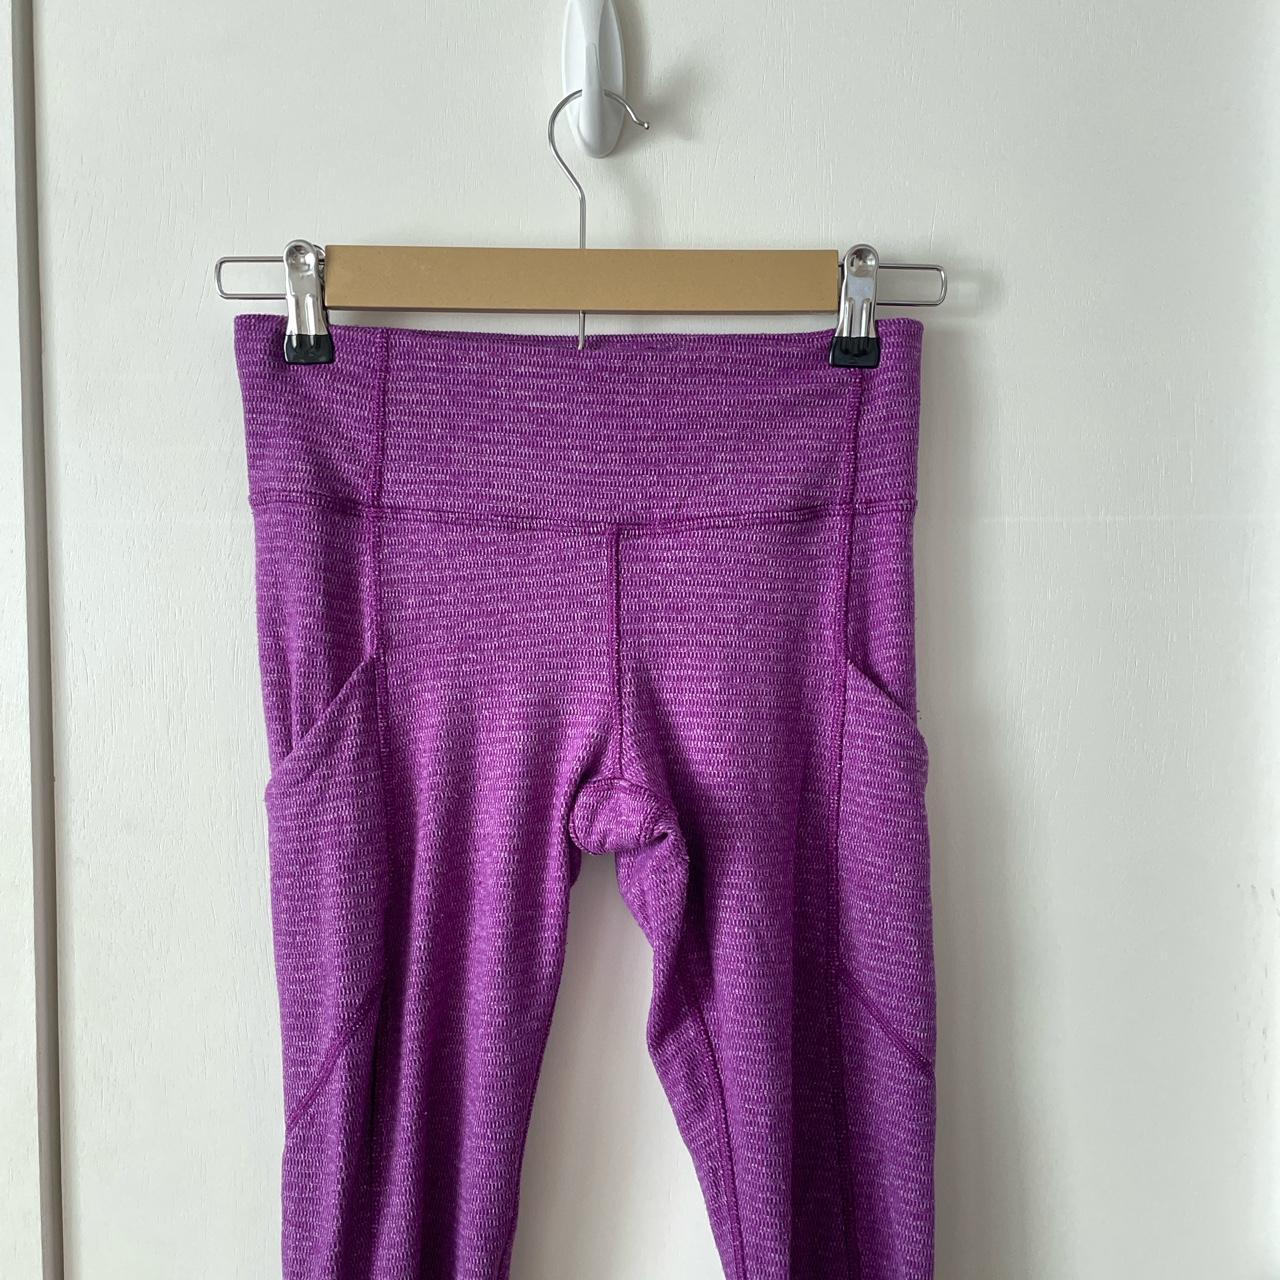 Lululemon purple leggings. , Size 4, $30